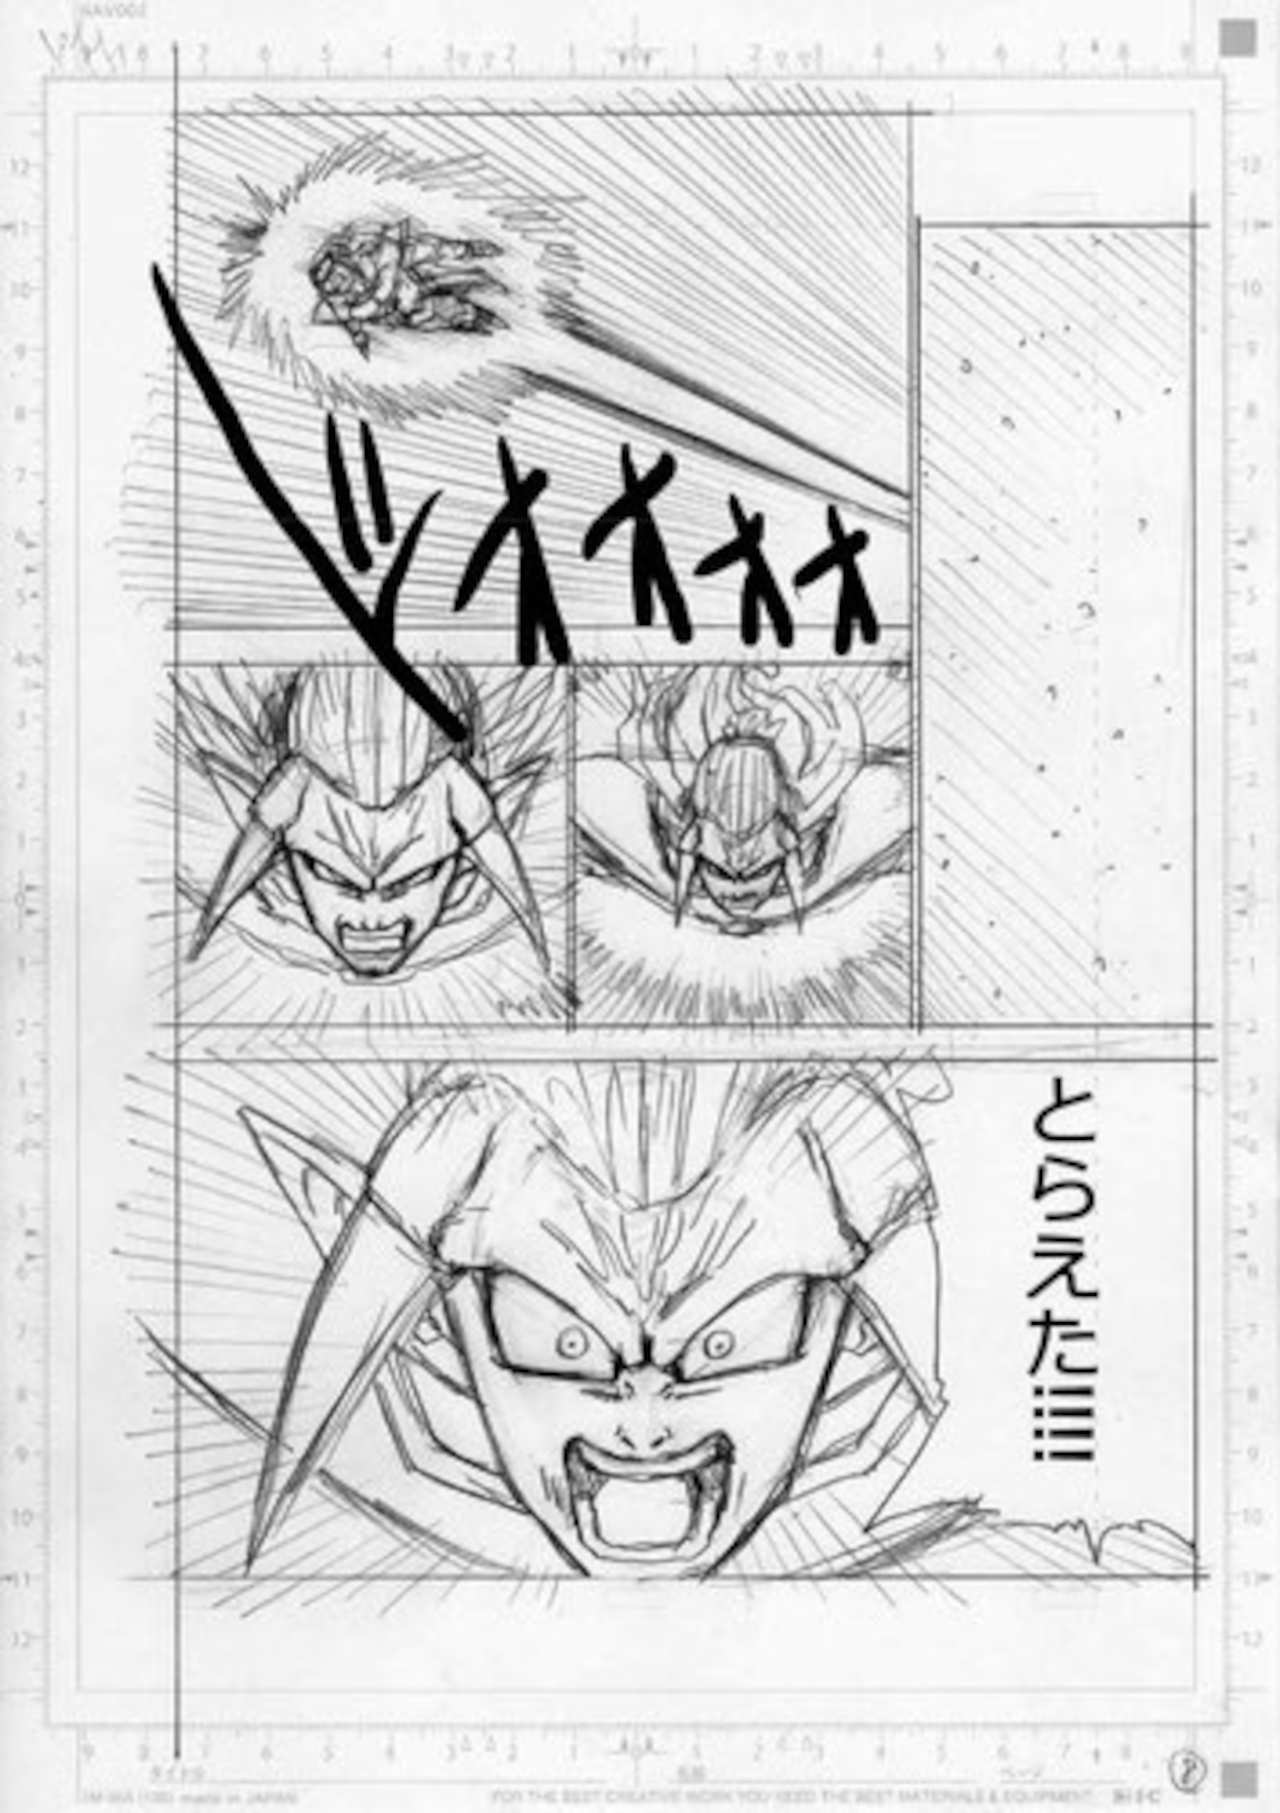 Goku y Vegeta revelaron un nuevo uniforme en Dragon Ball Super